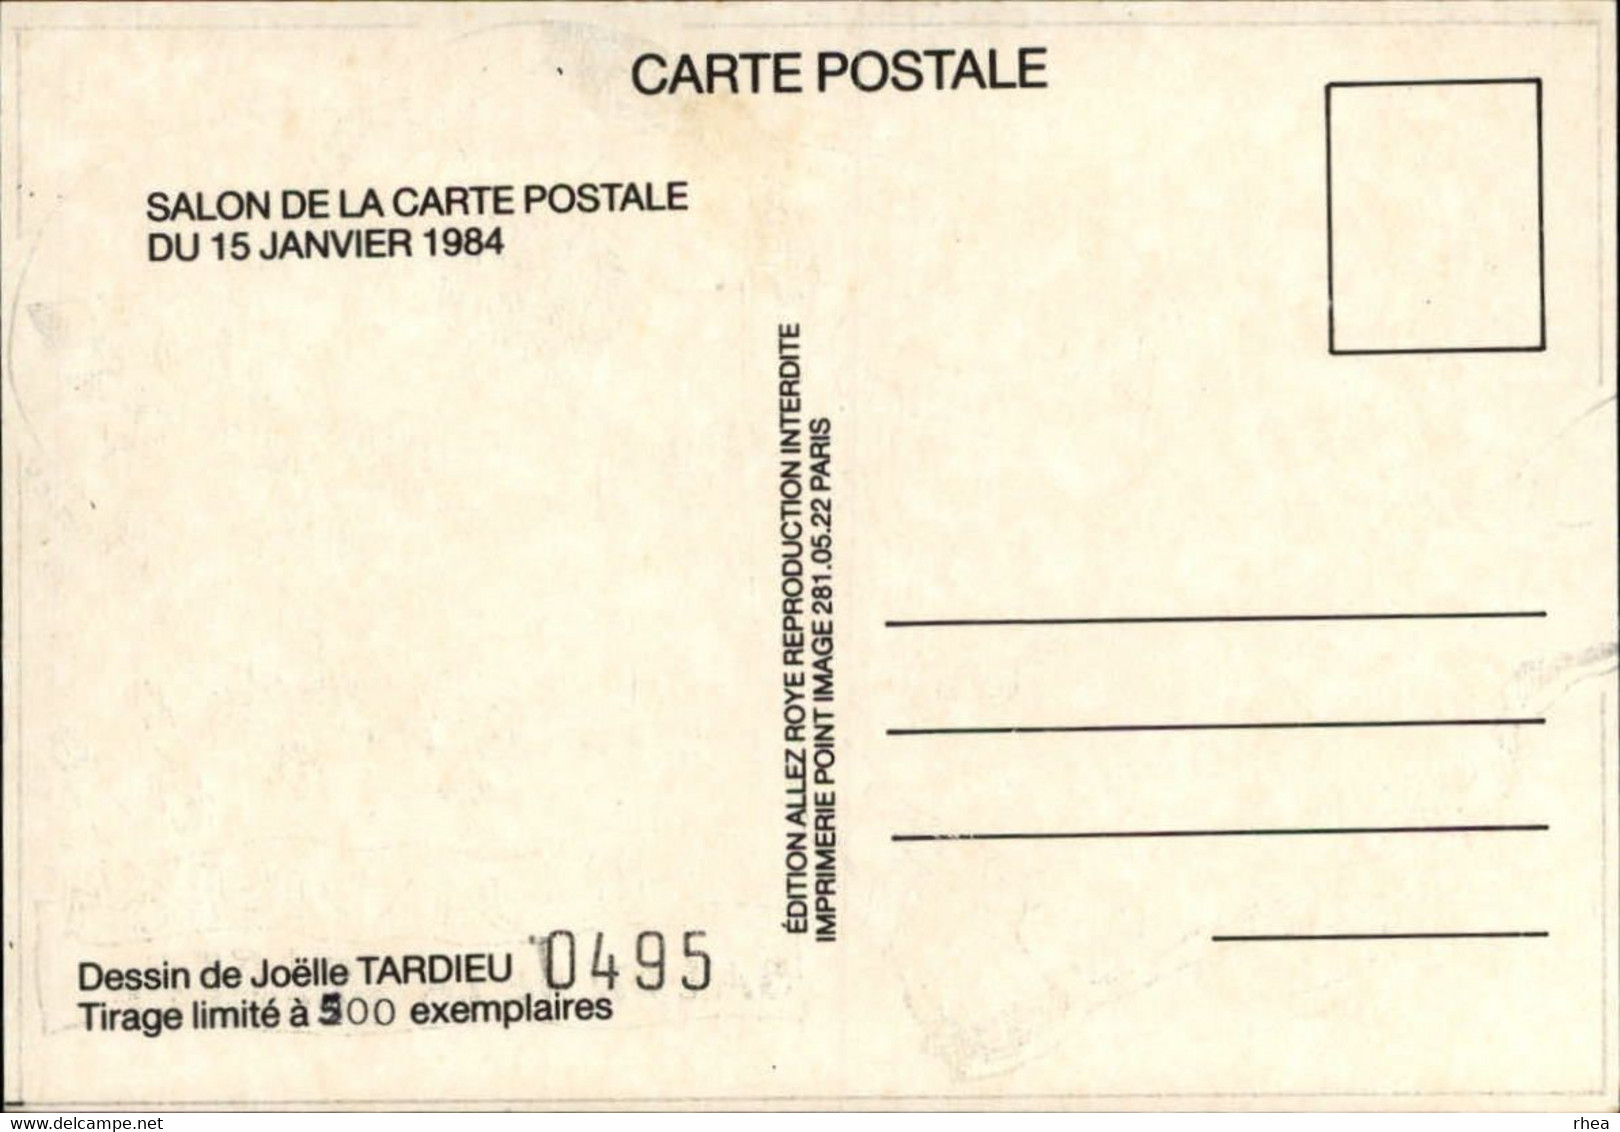 SALONS DE COLLECTIONS - Salon De Cartes Postales -  80 ROYE - Foot - Dessin De Tardieu - 1984 - Bourses & Salons De Collections